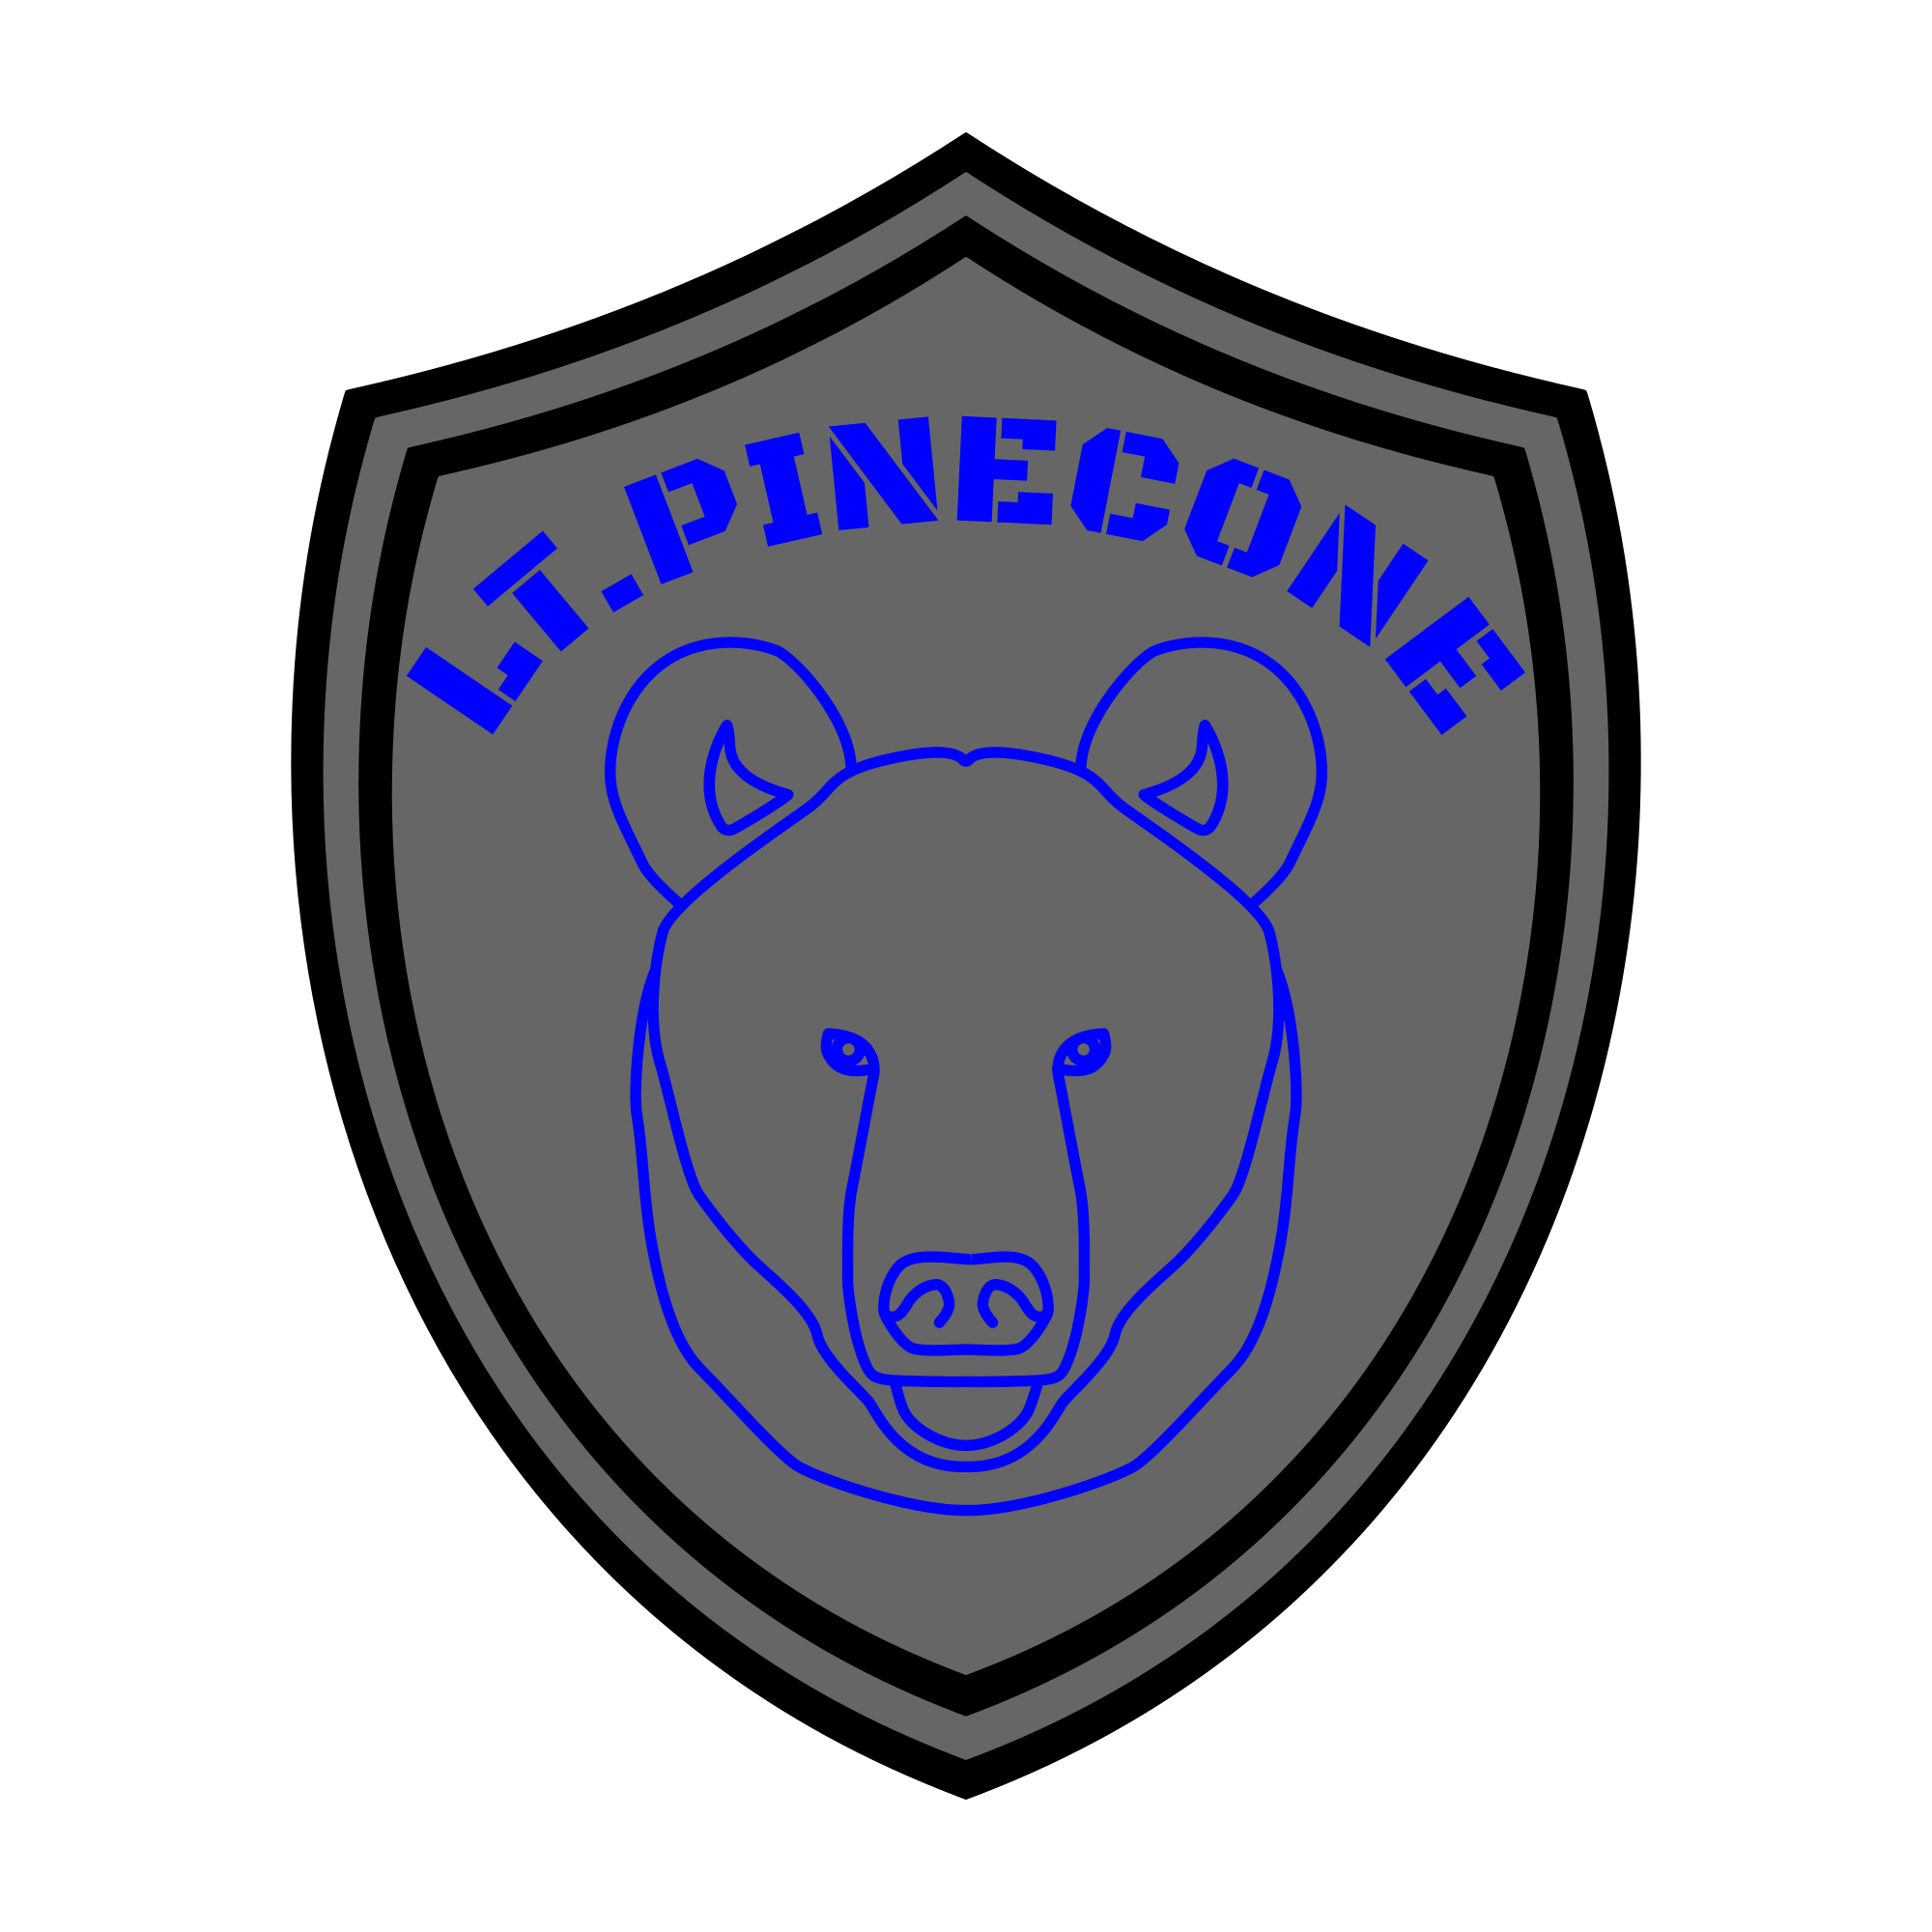 Lt. Pinecone